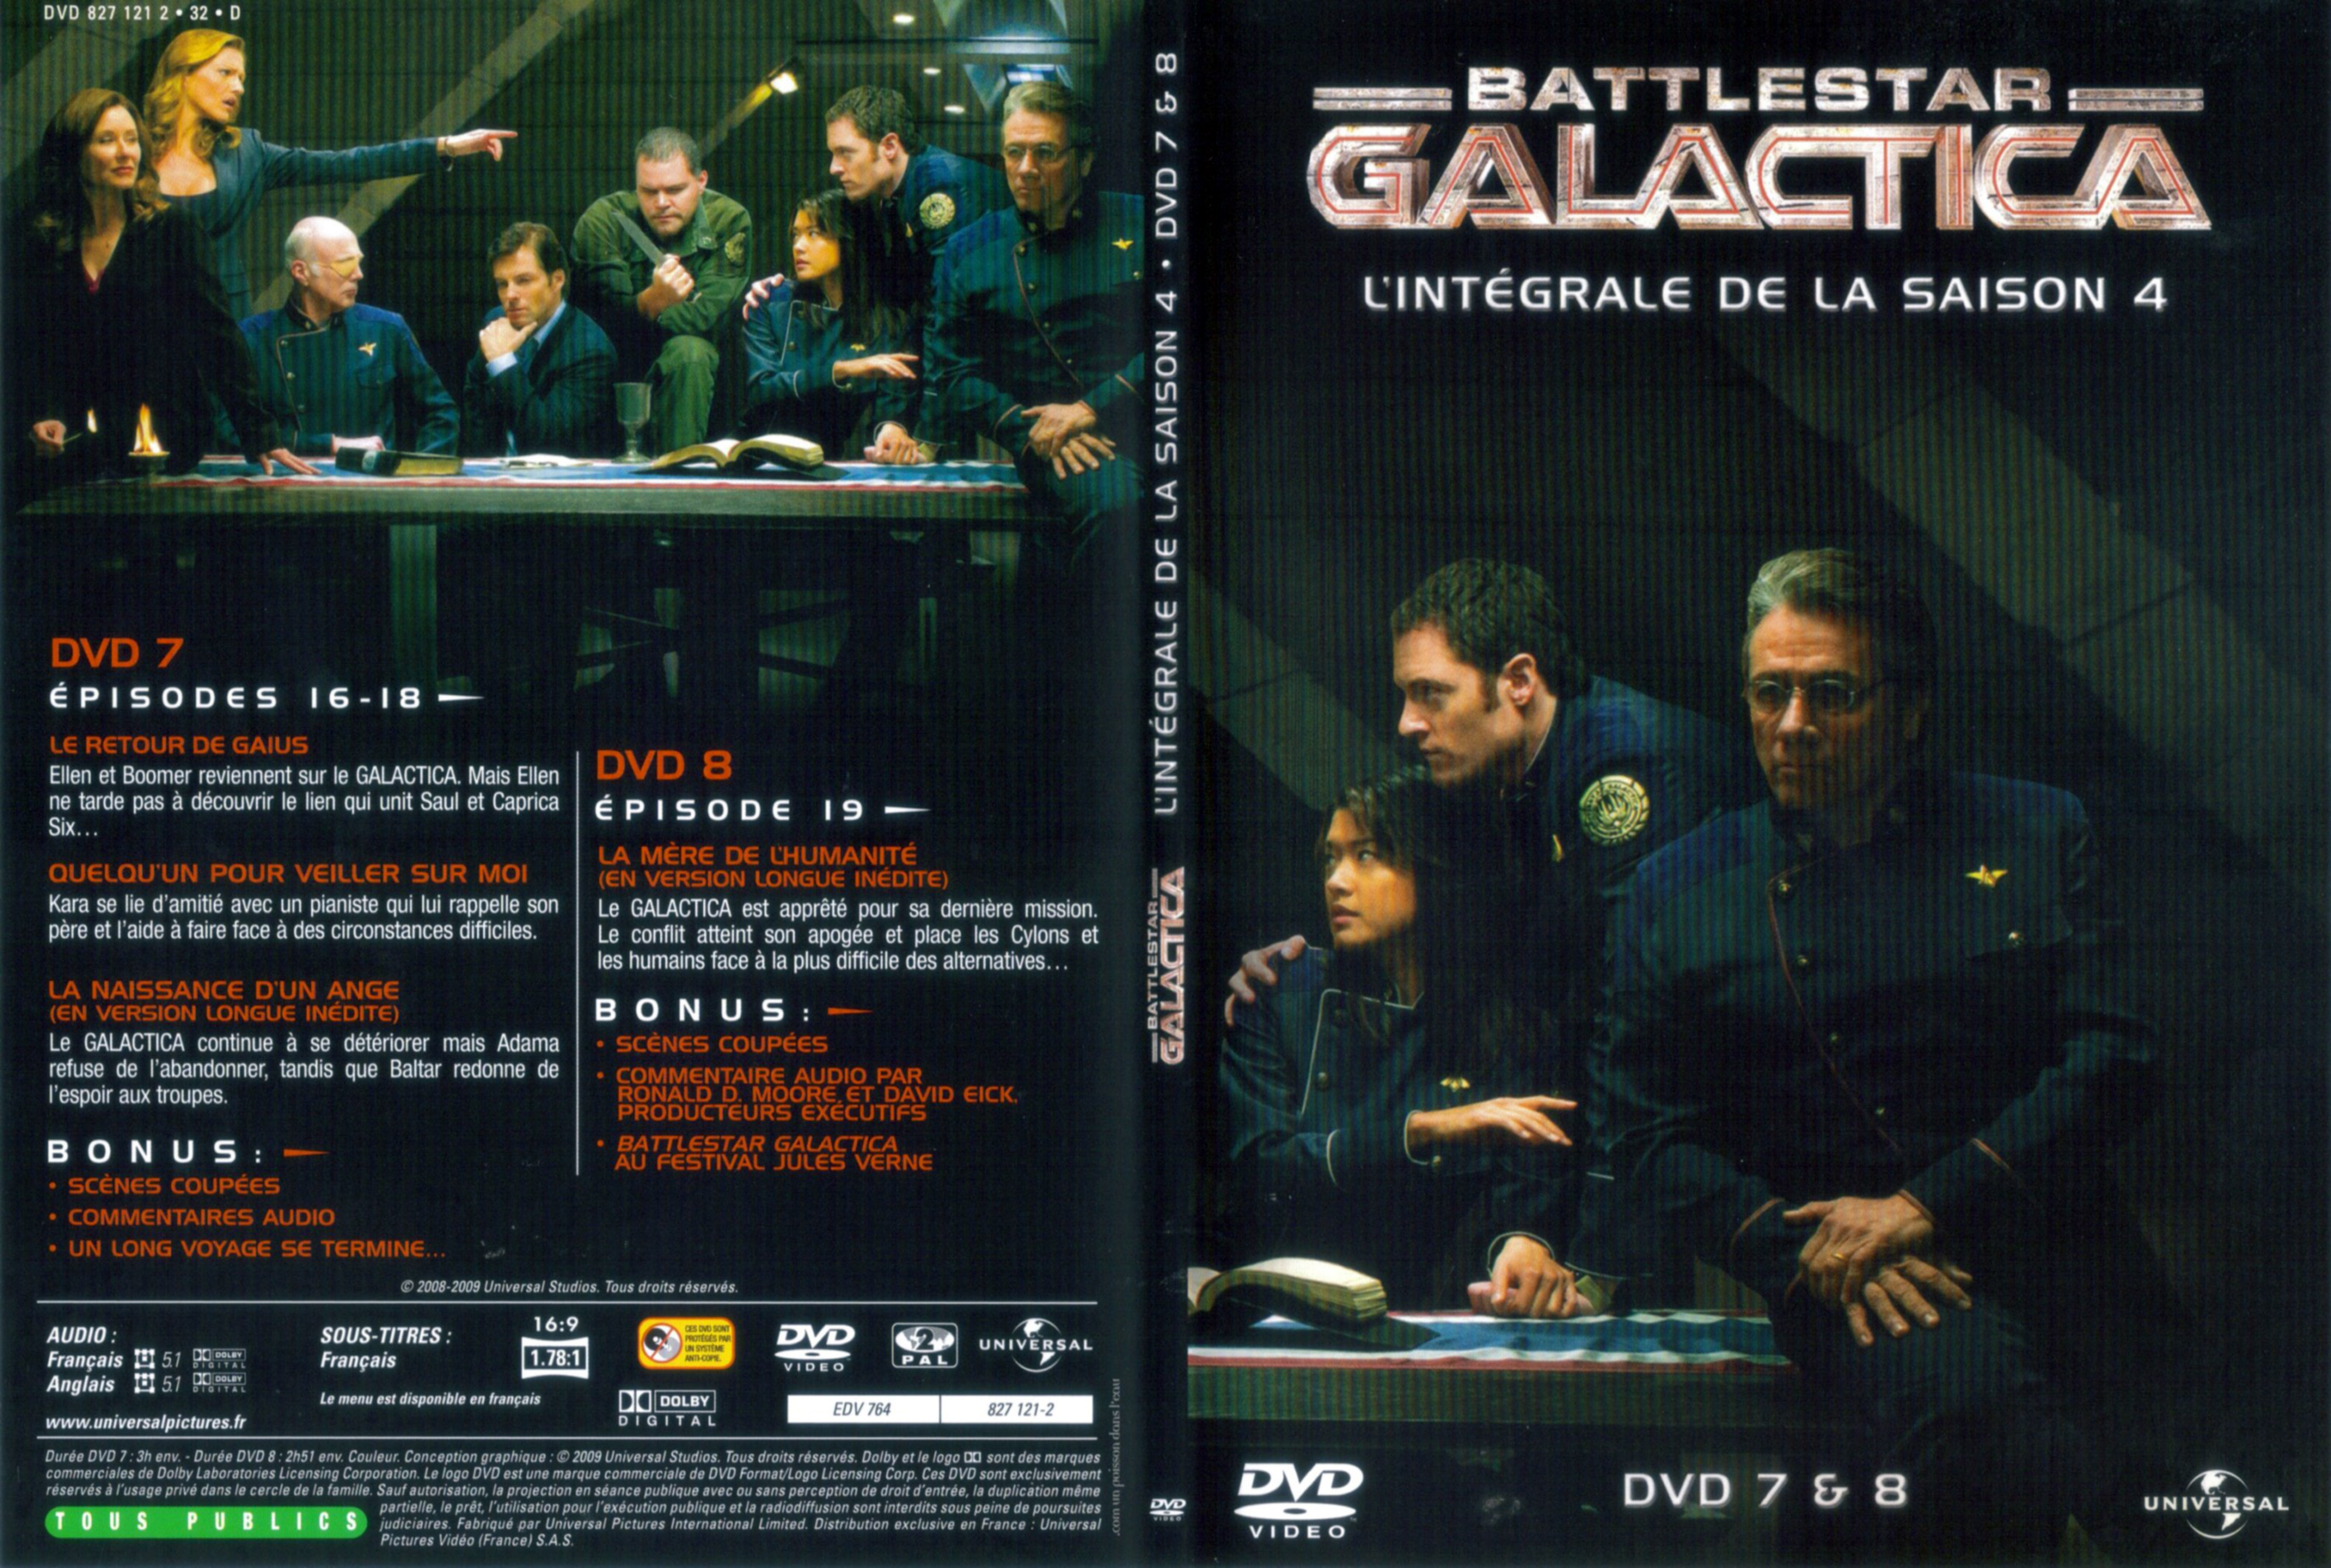 Jaquette DVD Battlestar Galactica Saison 4 DVD 4